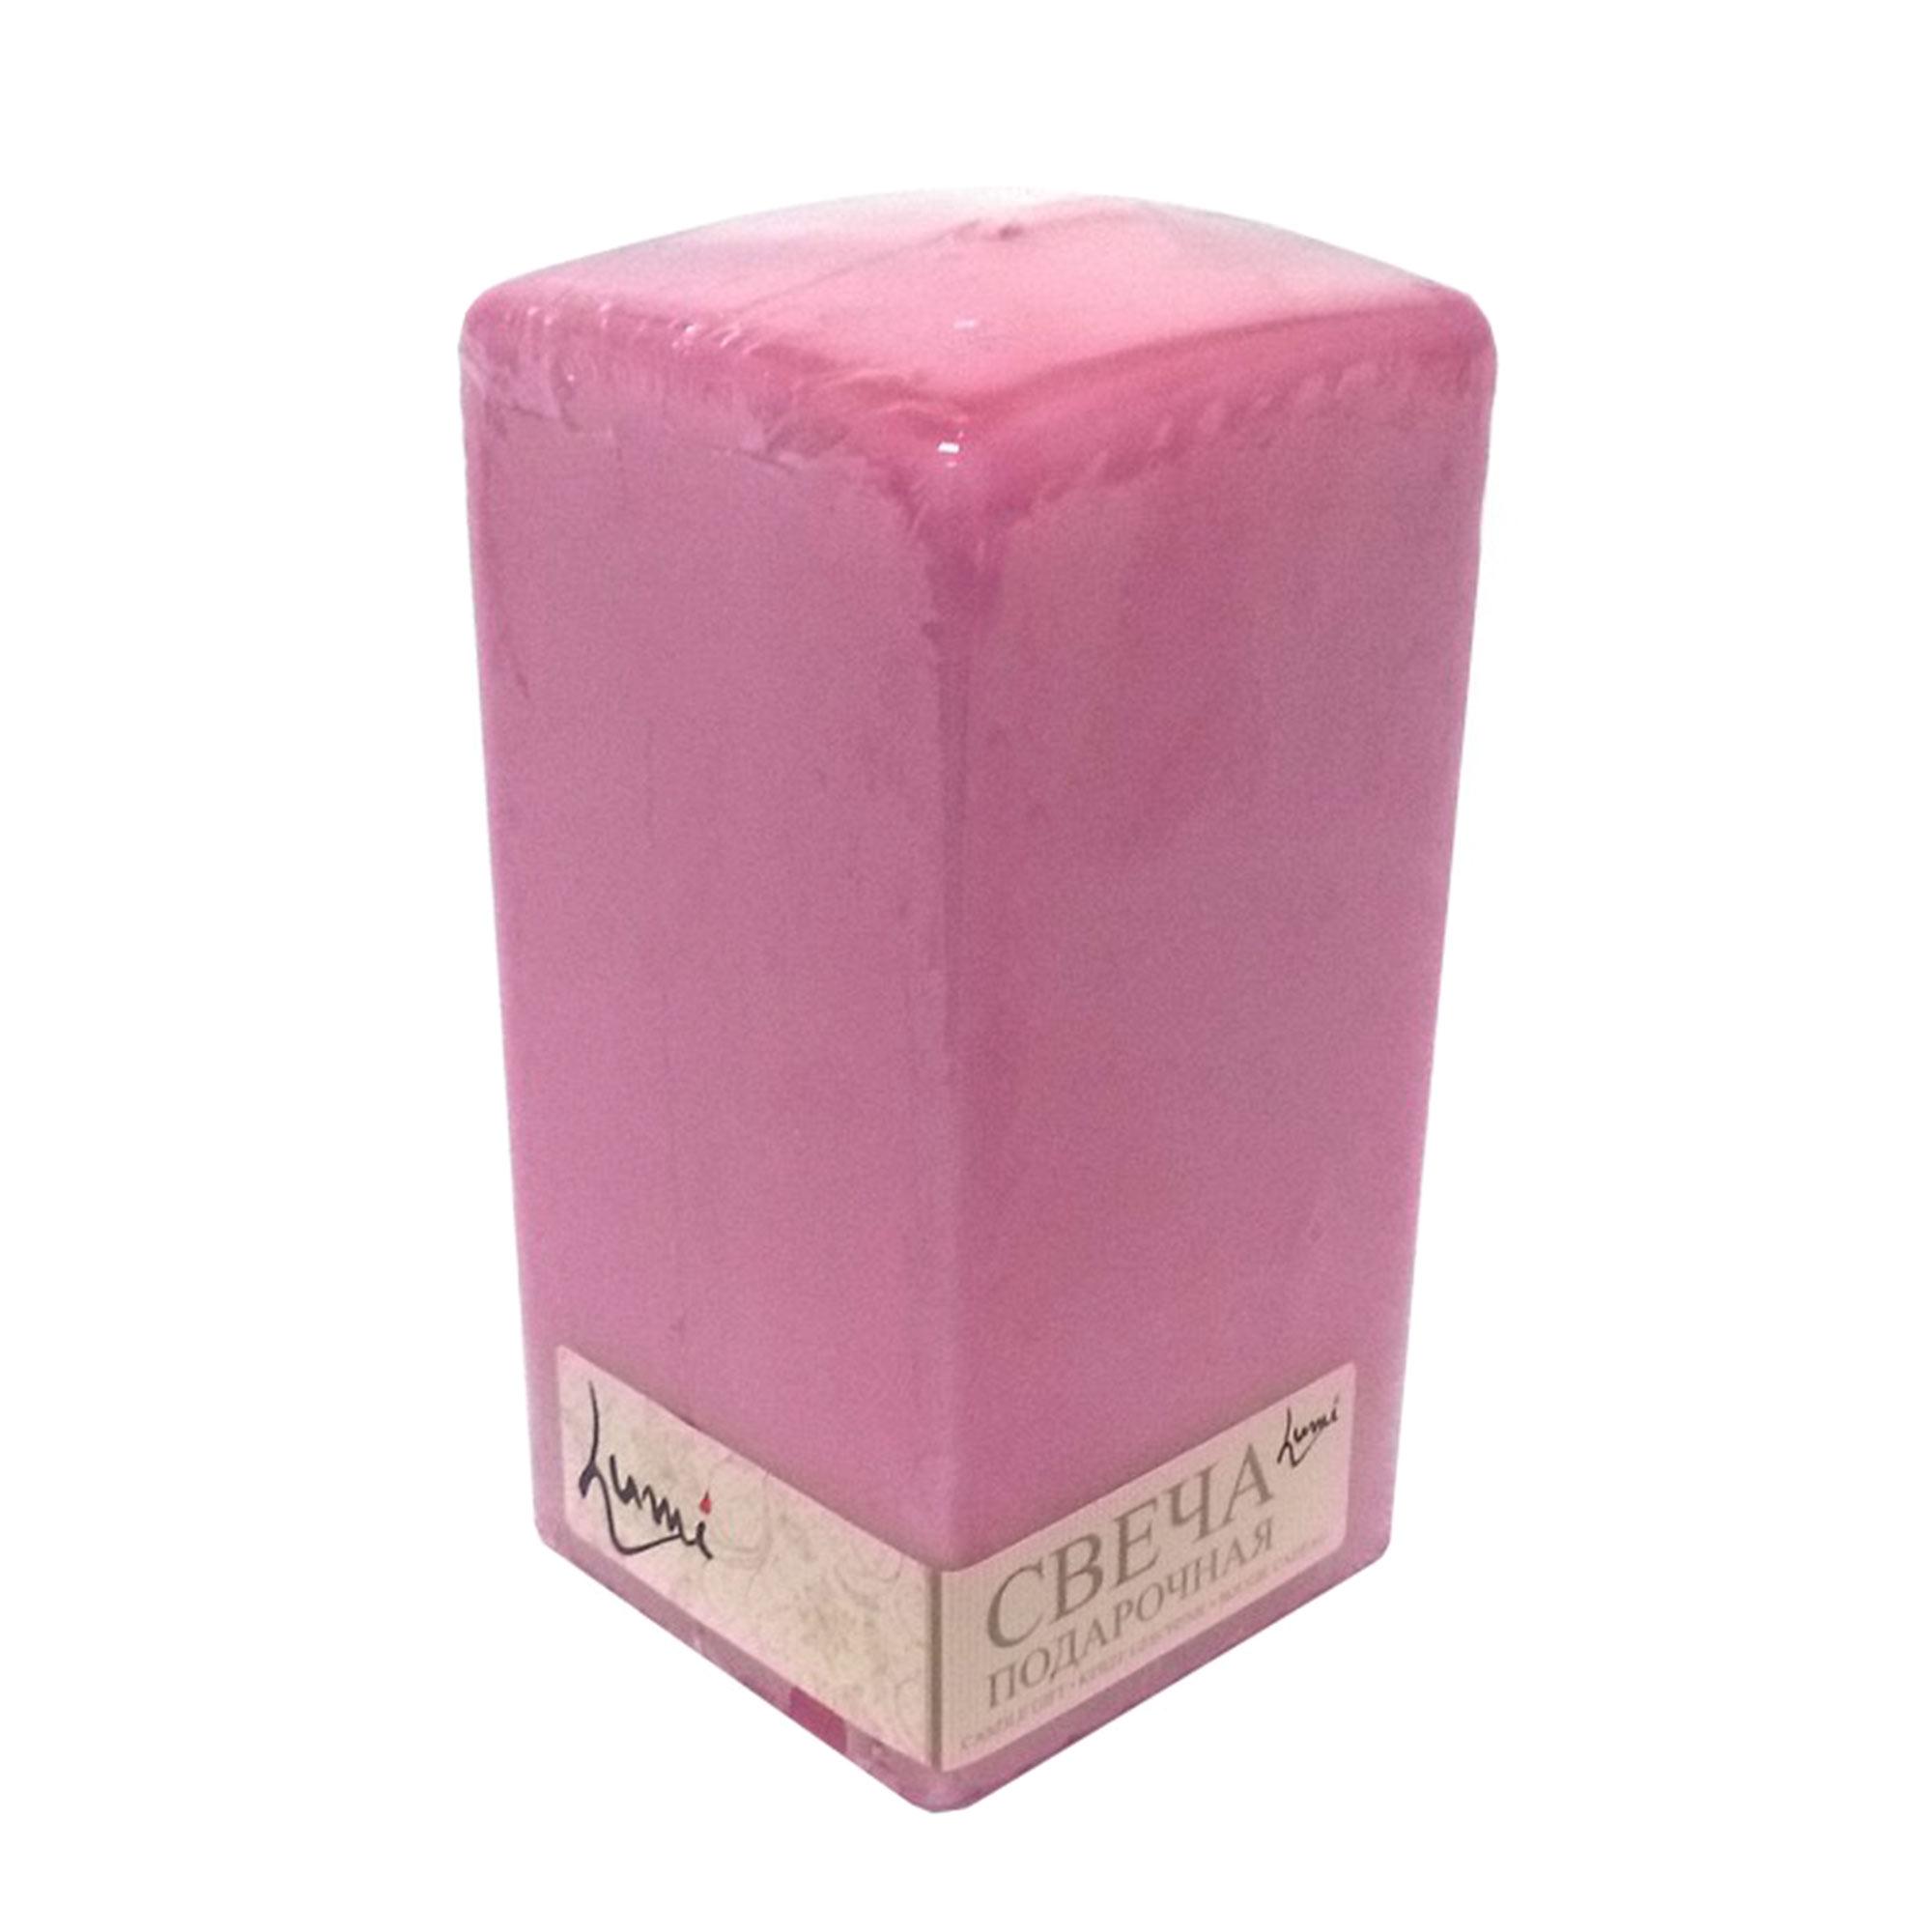 Свеча призма квадратная Lumi 6x6x15 розовая свеча ок в торт музыкальная розовая